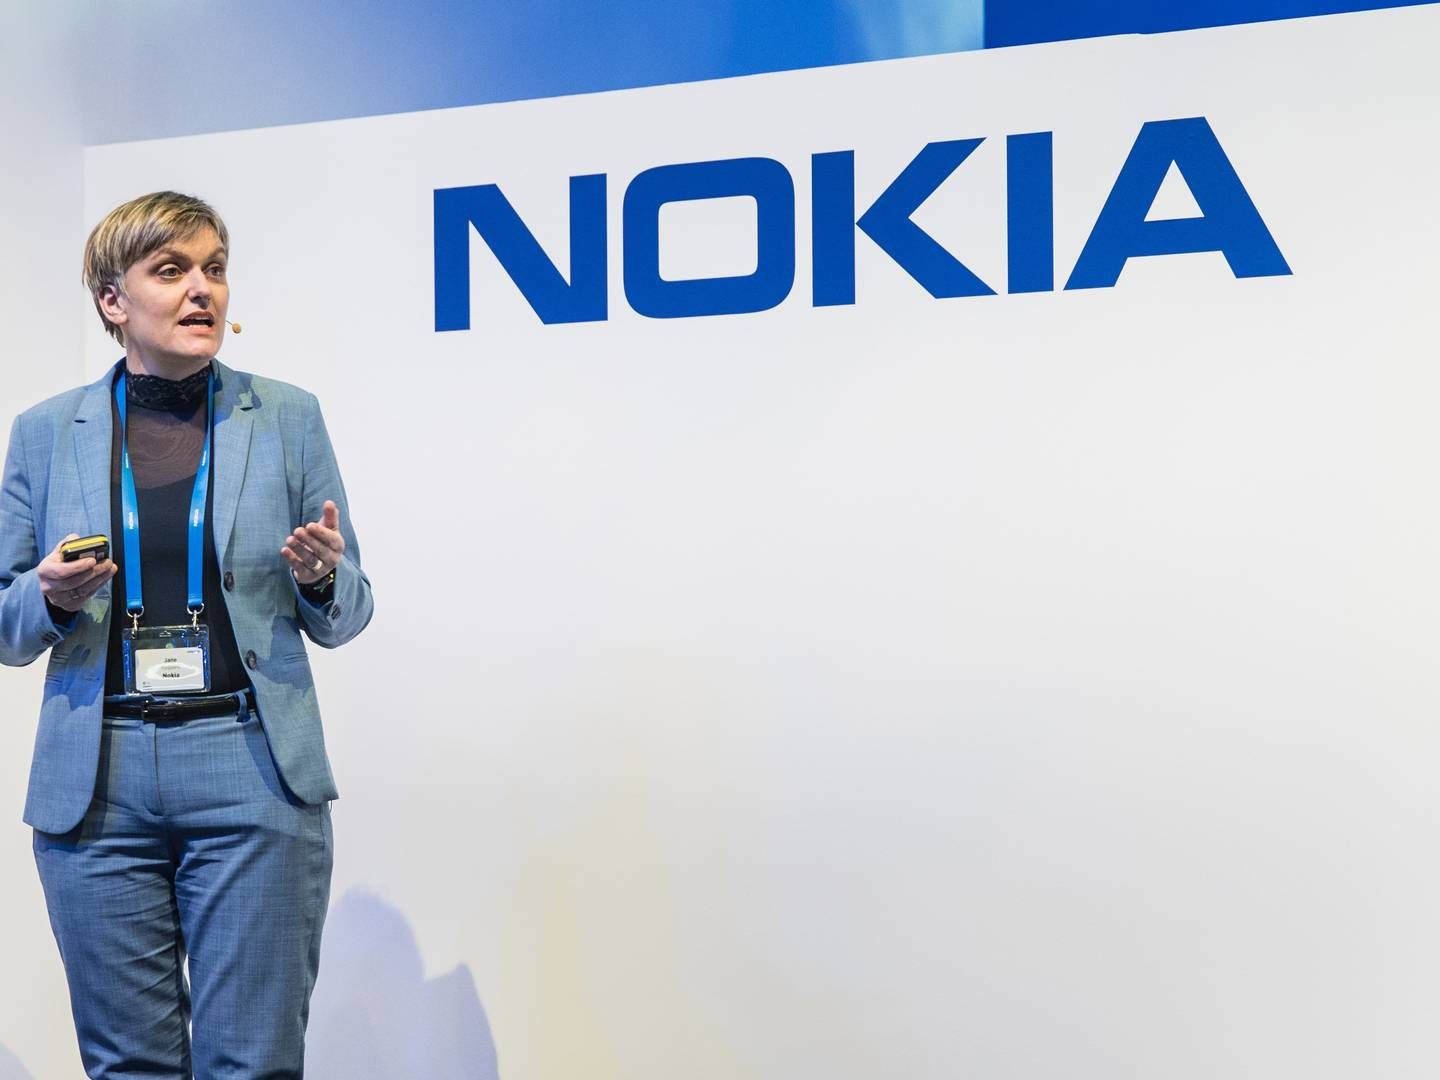 "Vi ser dem mange steder, men der er ikke noget sted i verden, hvor vi ikke er i god konkurrence med hinanden," siger Nokias chef for 5G marketing, Jane Rygaard, om kinesiske Huaweis fremmarch. | Foto: PR/Nokia